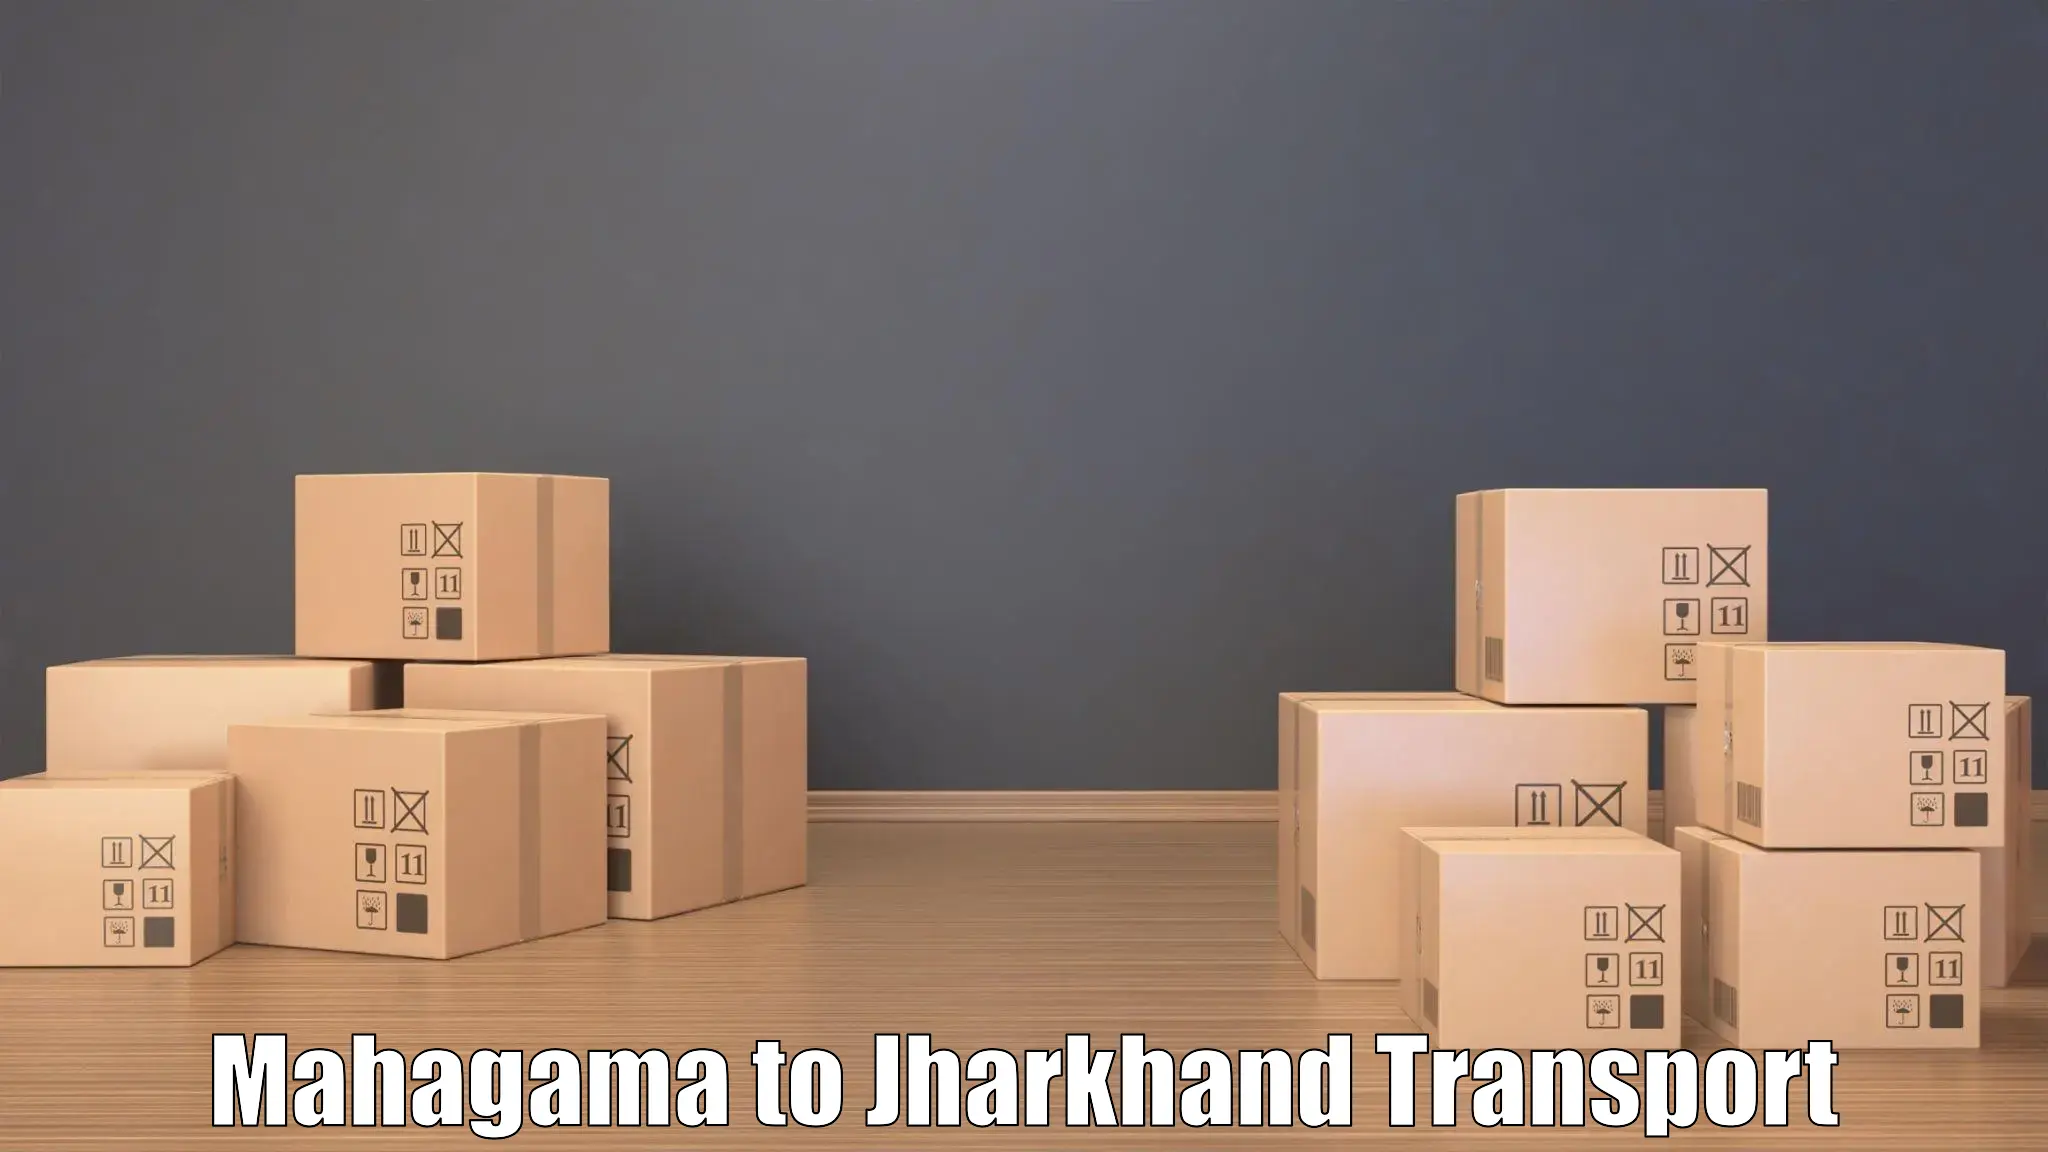 Daily transport service Mahagama to Ormanjhi